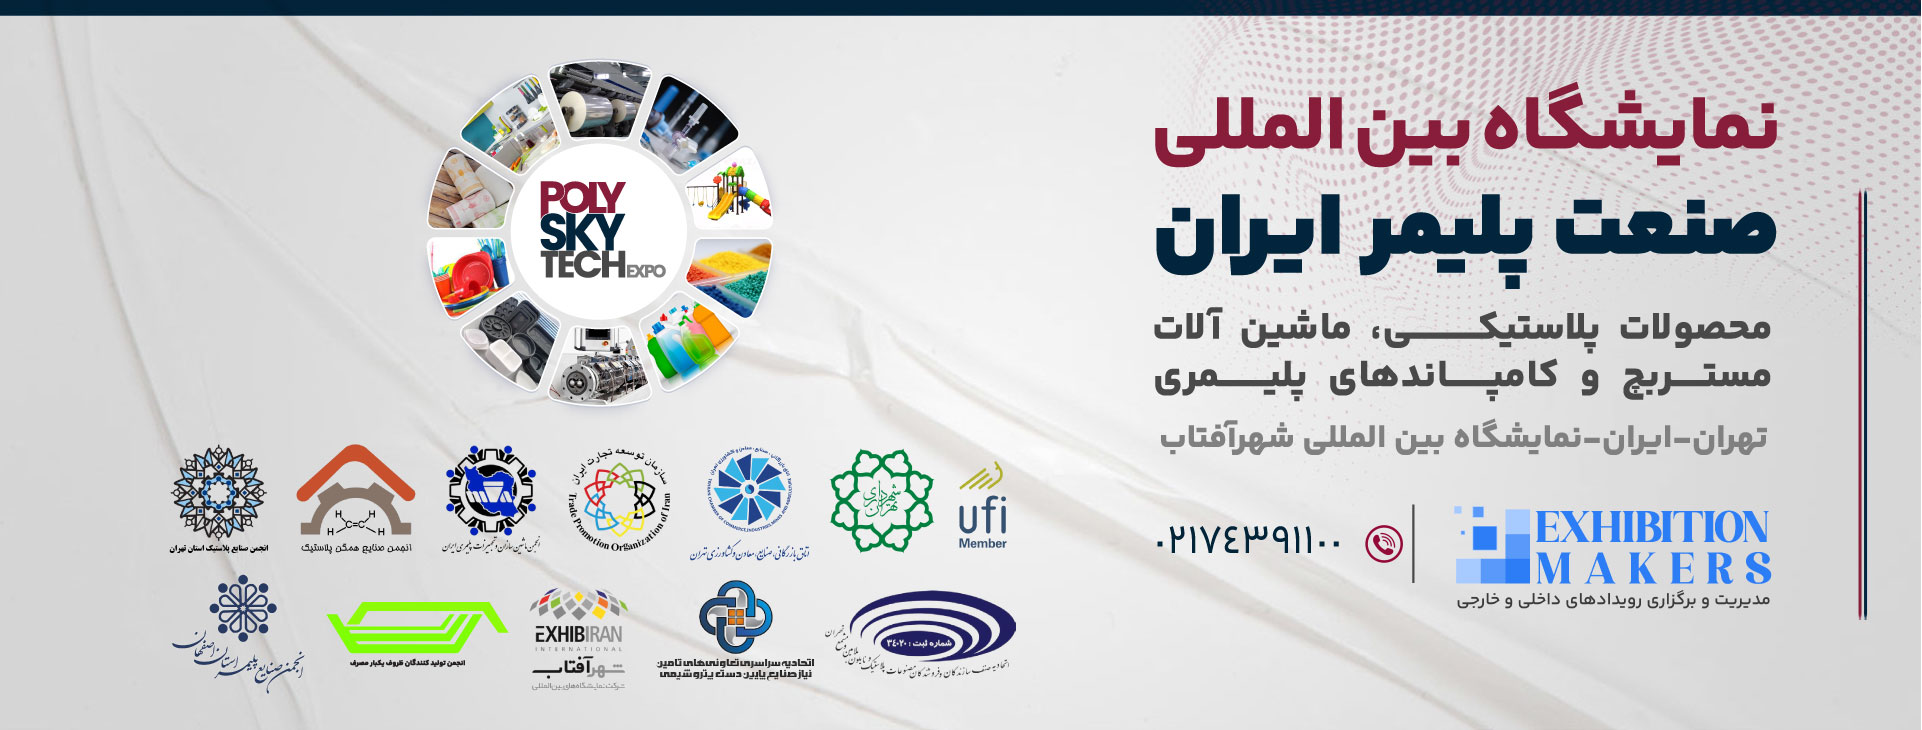 نمایشگاه بین المللی صنعت پلاستیک ایران (محصولات پلاستیکی، ماشین آلات و تکنولوژی ها، مستربچ و کامپاندهای پلیمری)